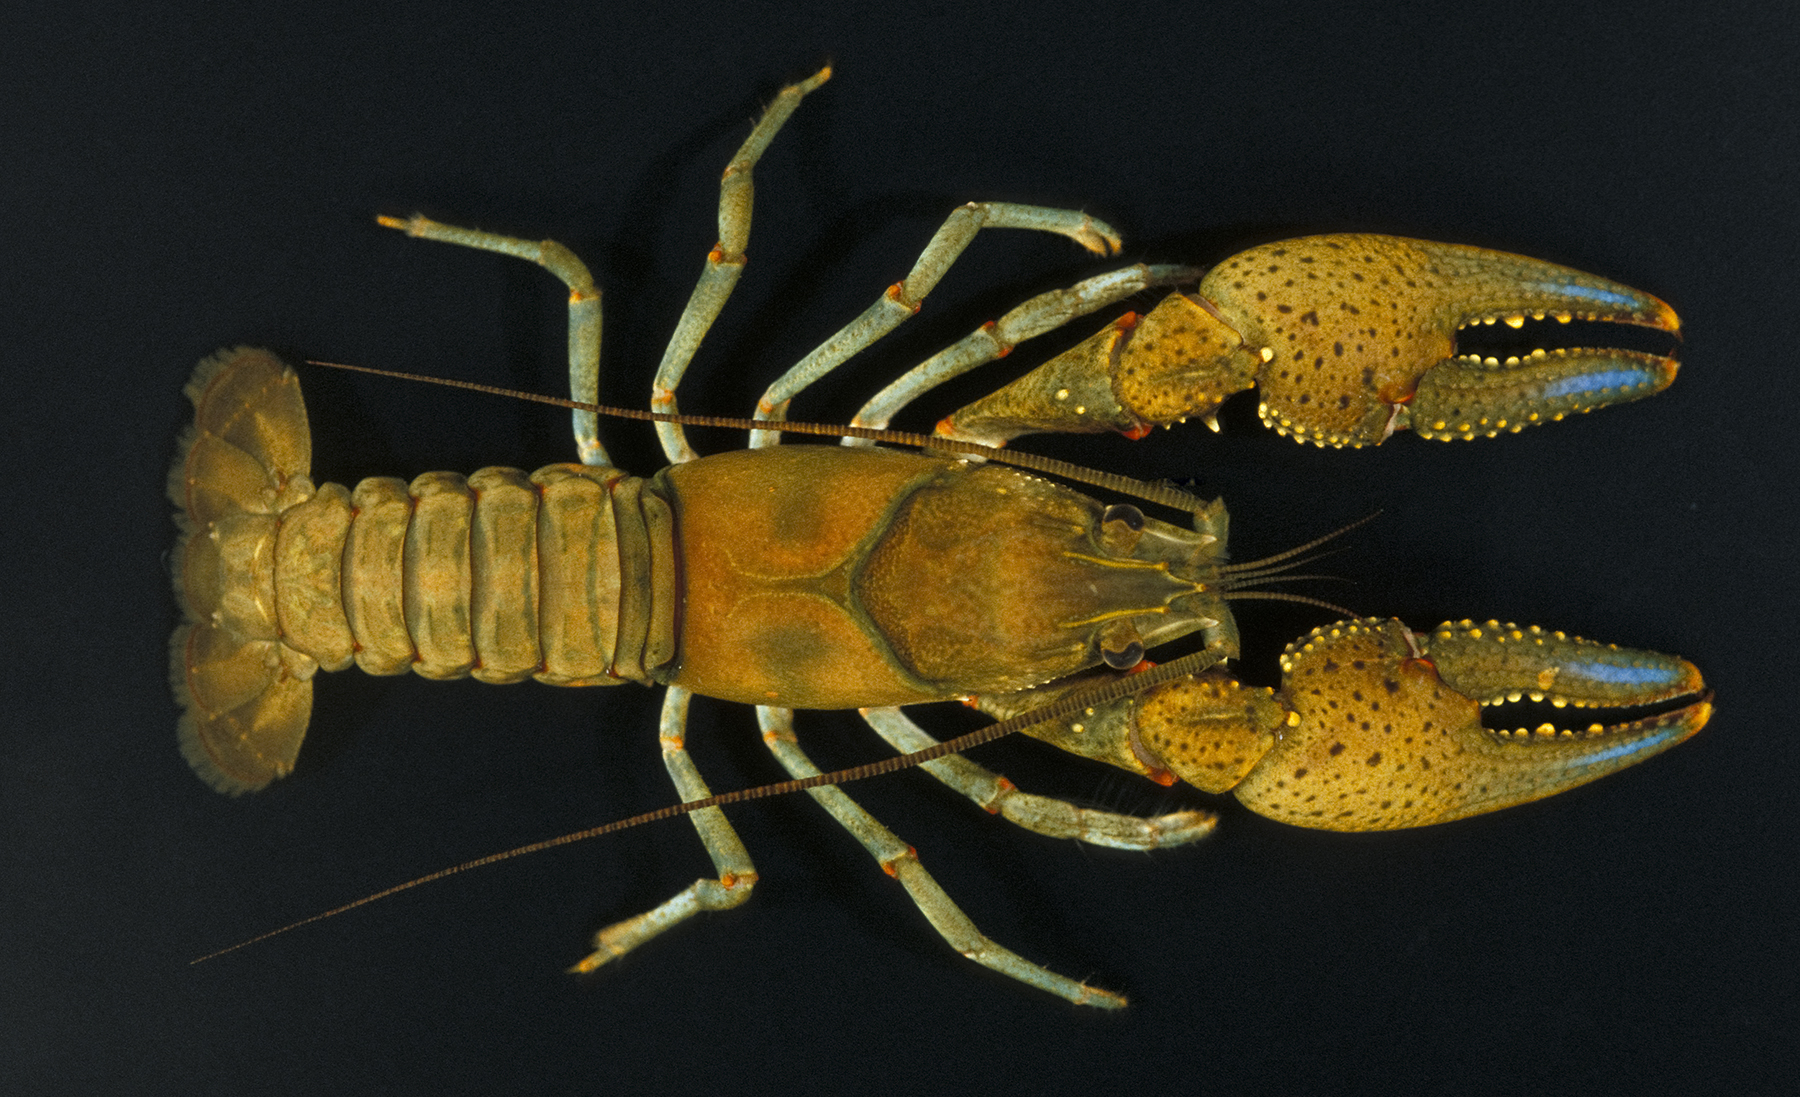 Crawfish vs crayfish